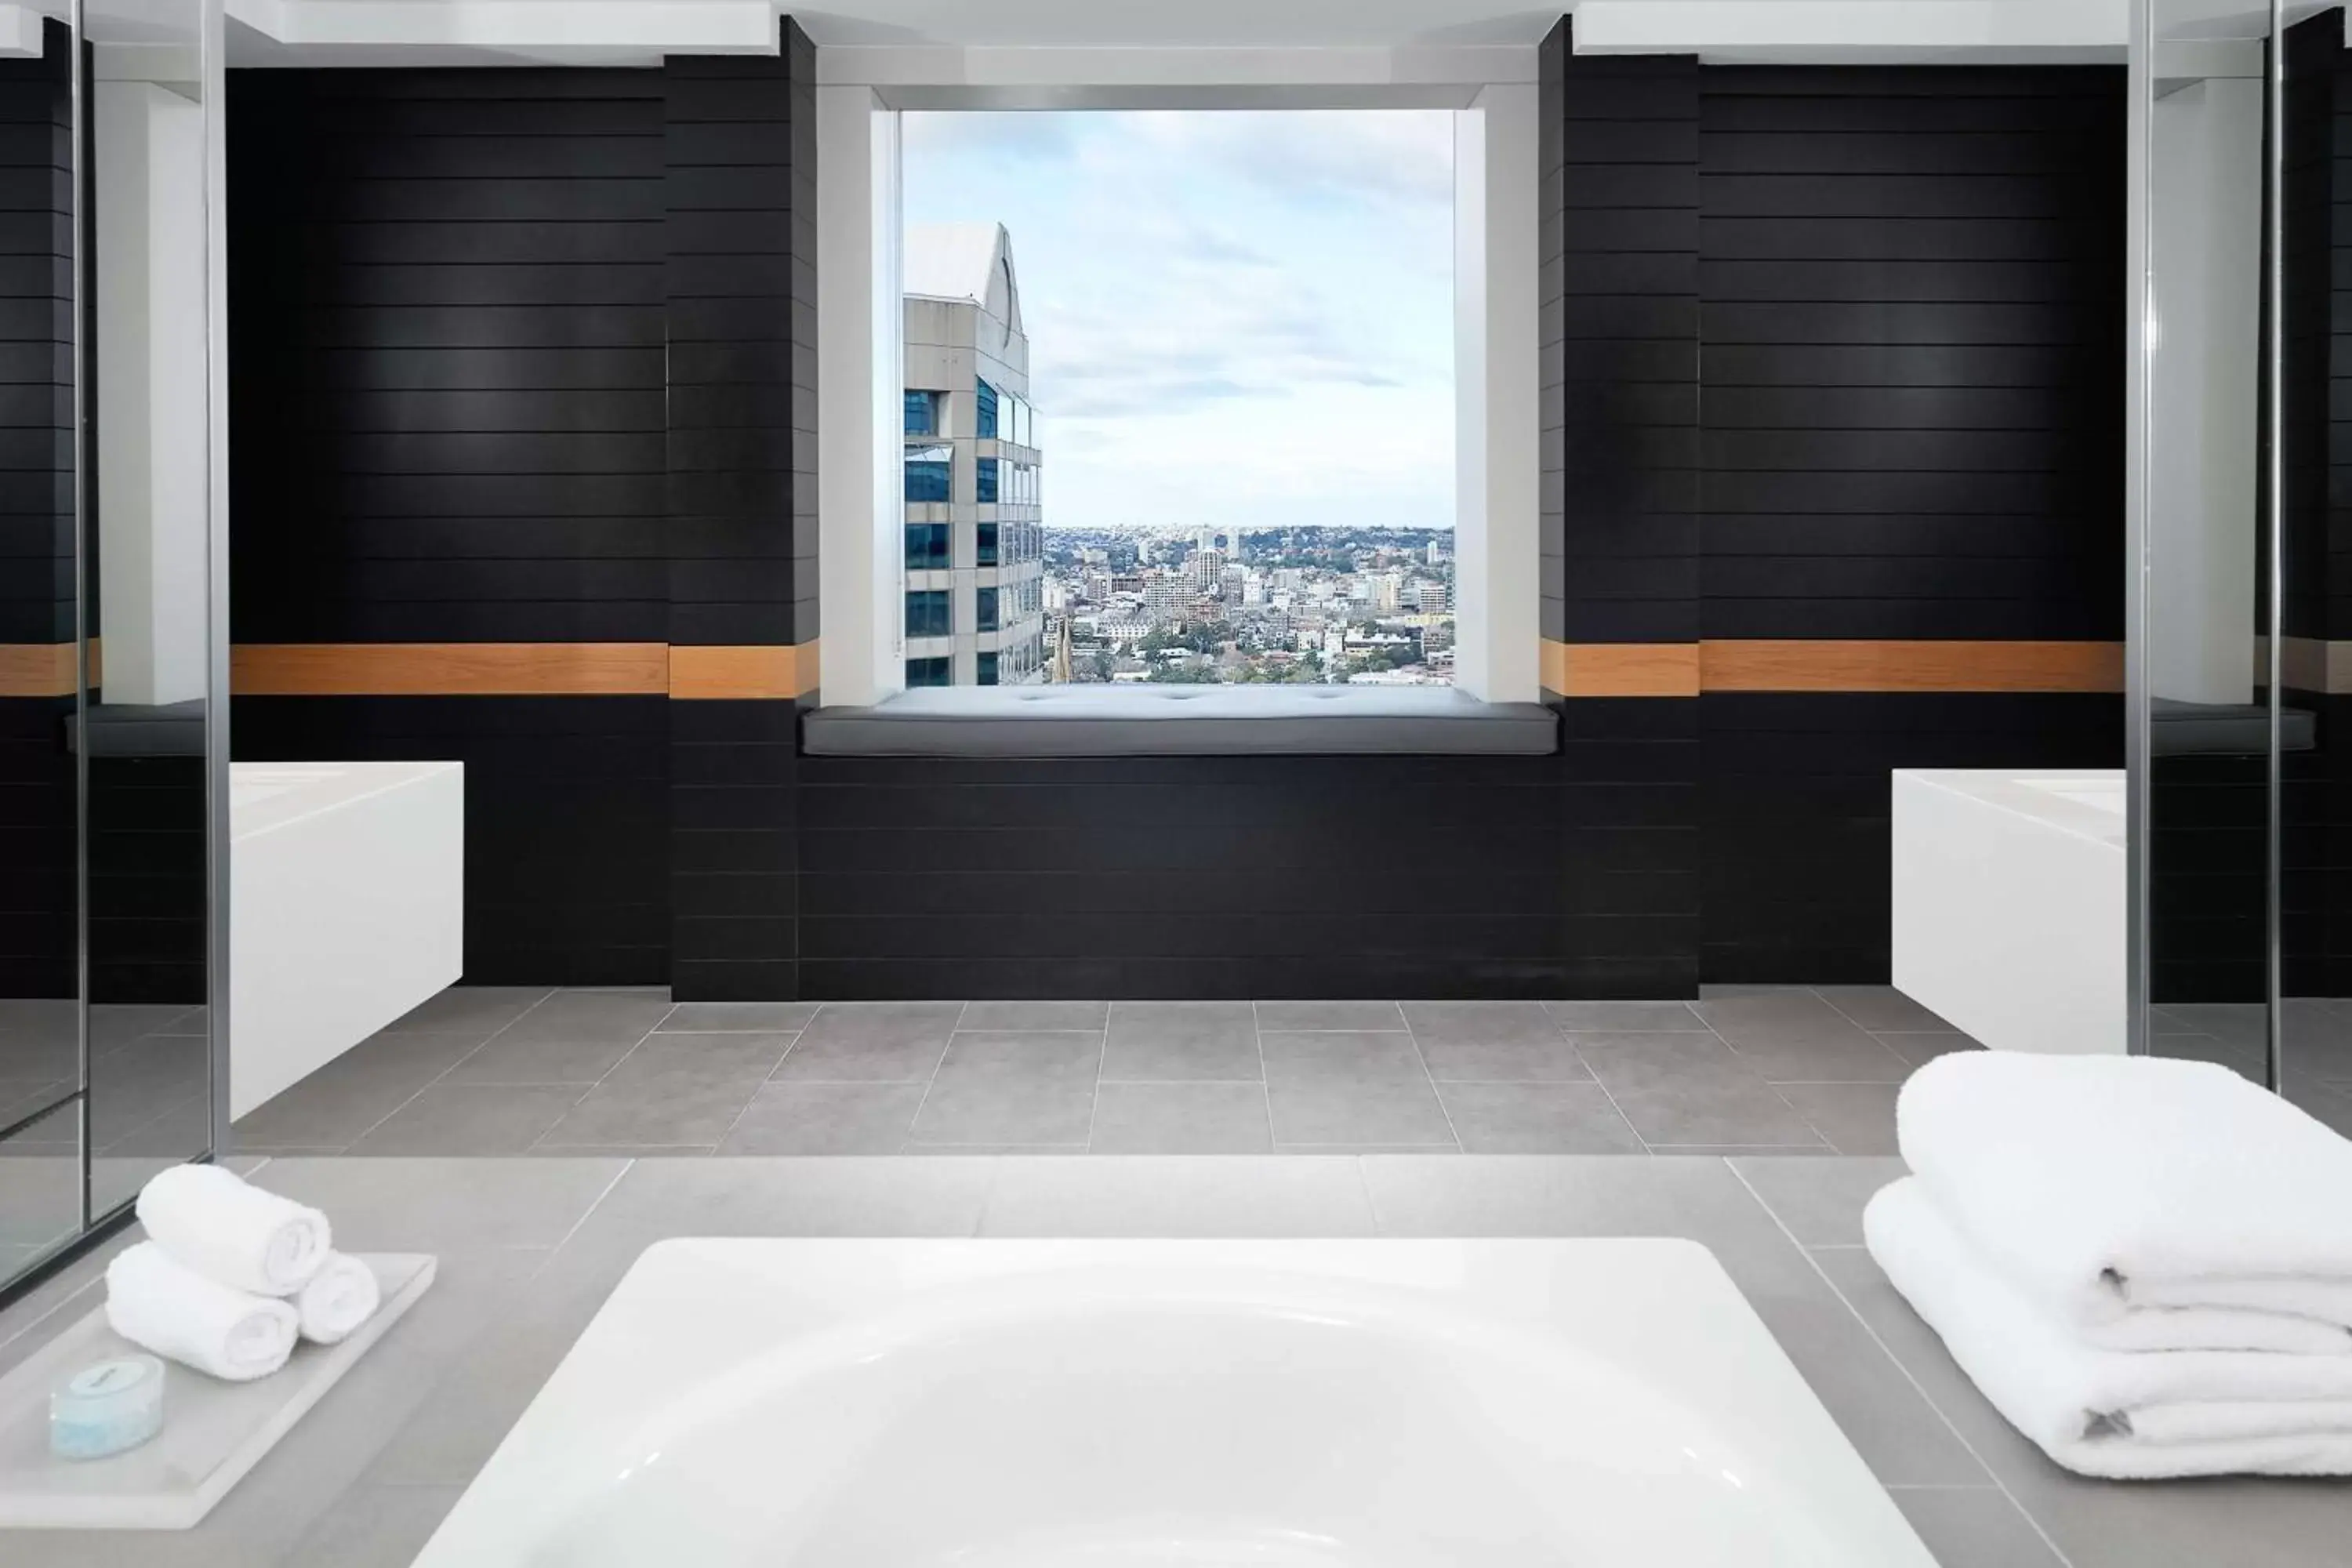 Bathroom in Hilton Sydney